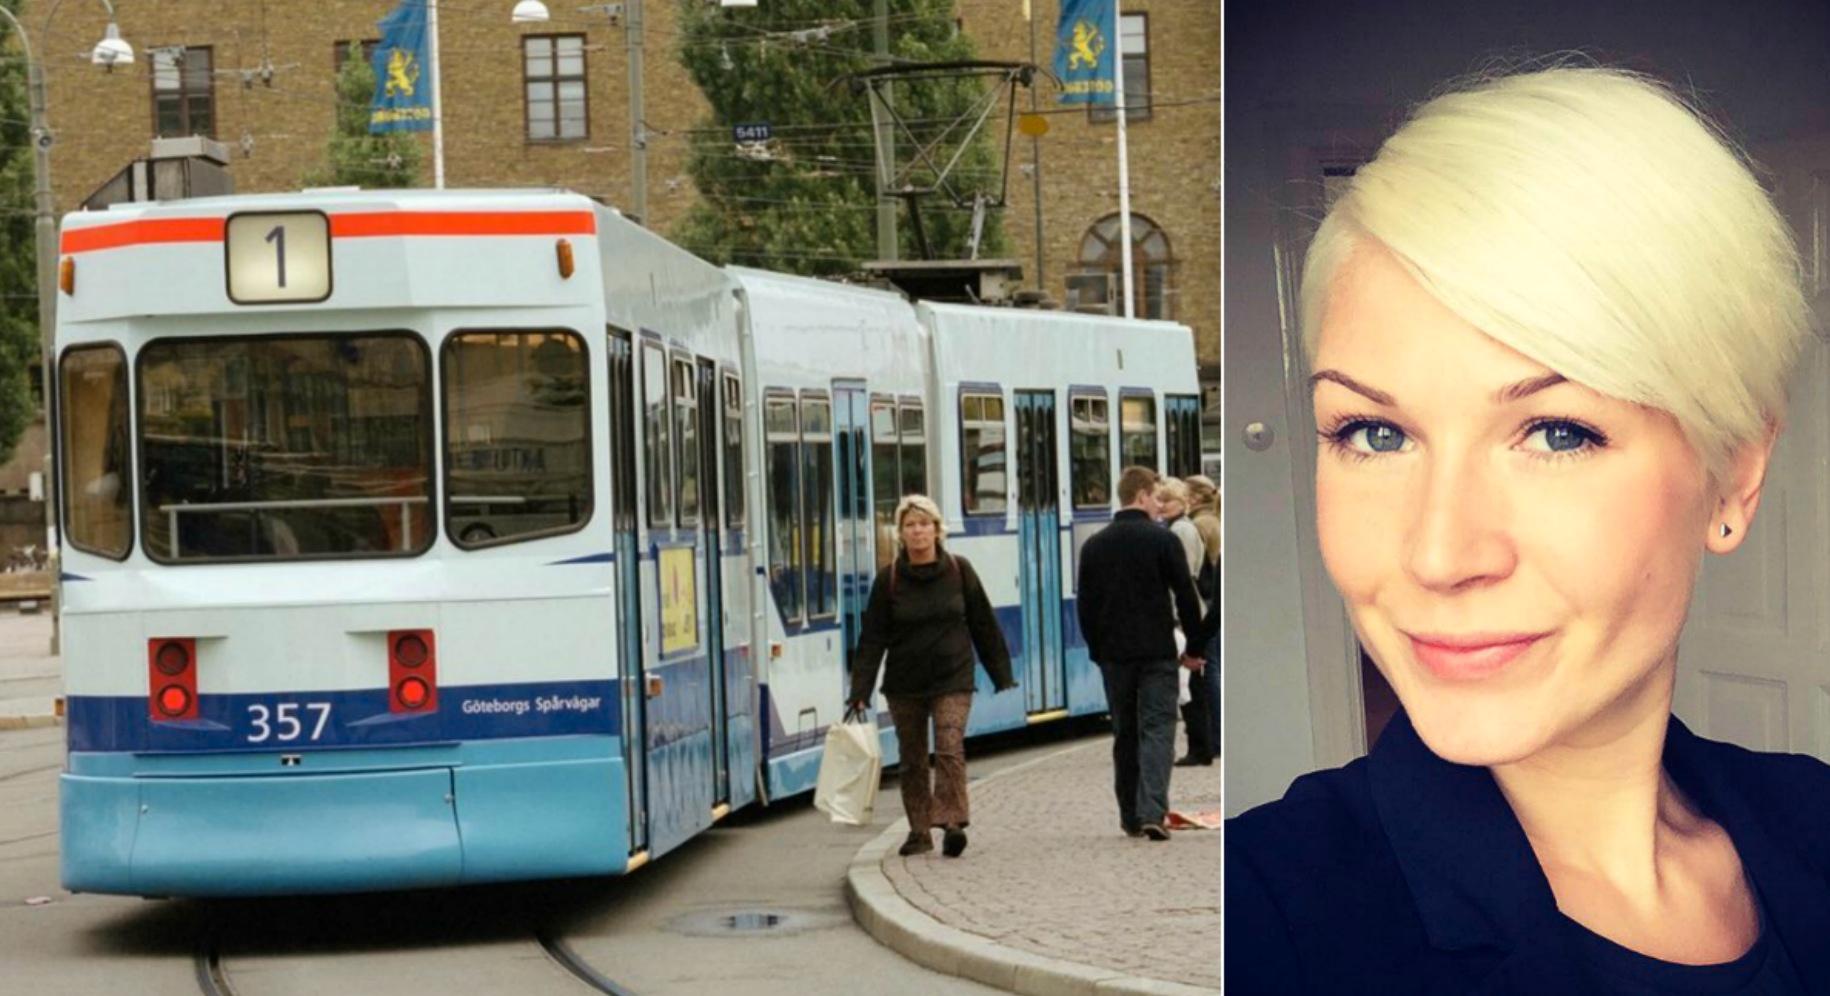 Passageraren Pernilla Rane, 29, vill hylla den kvinnliga spårvagnschauffören.